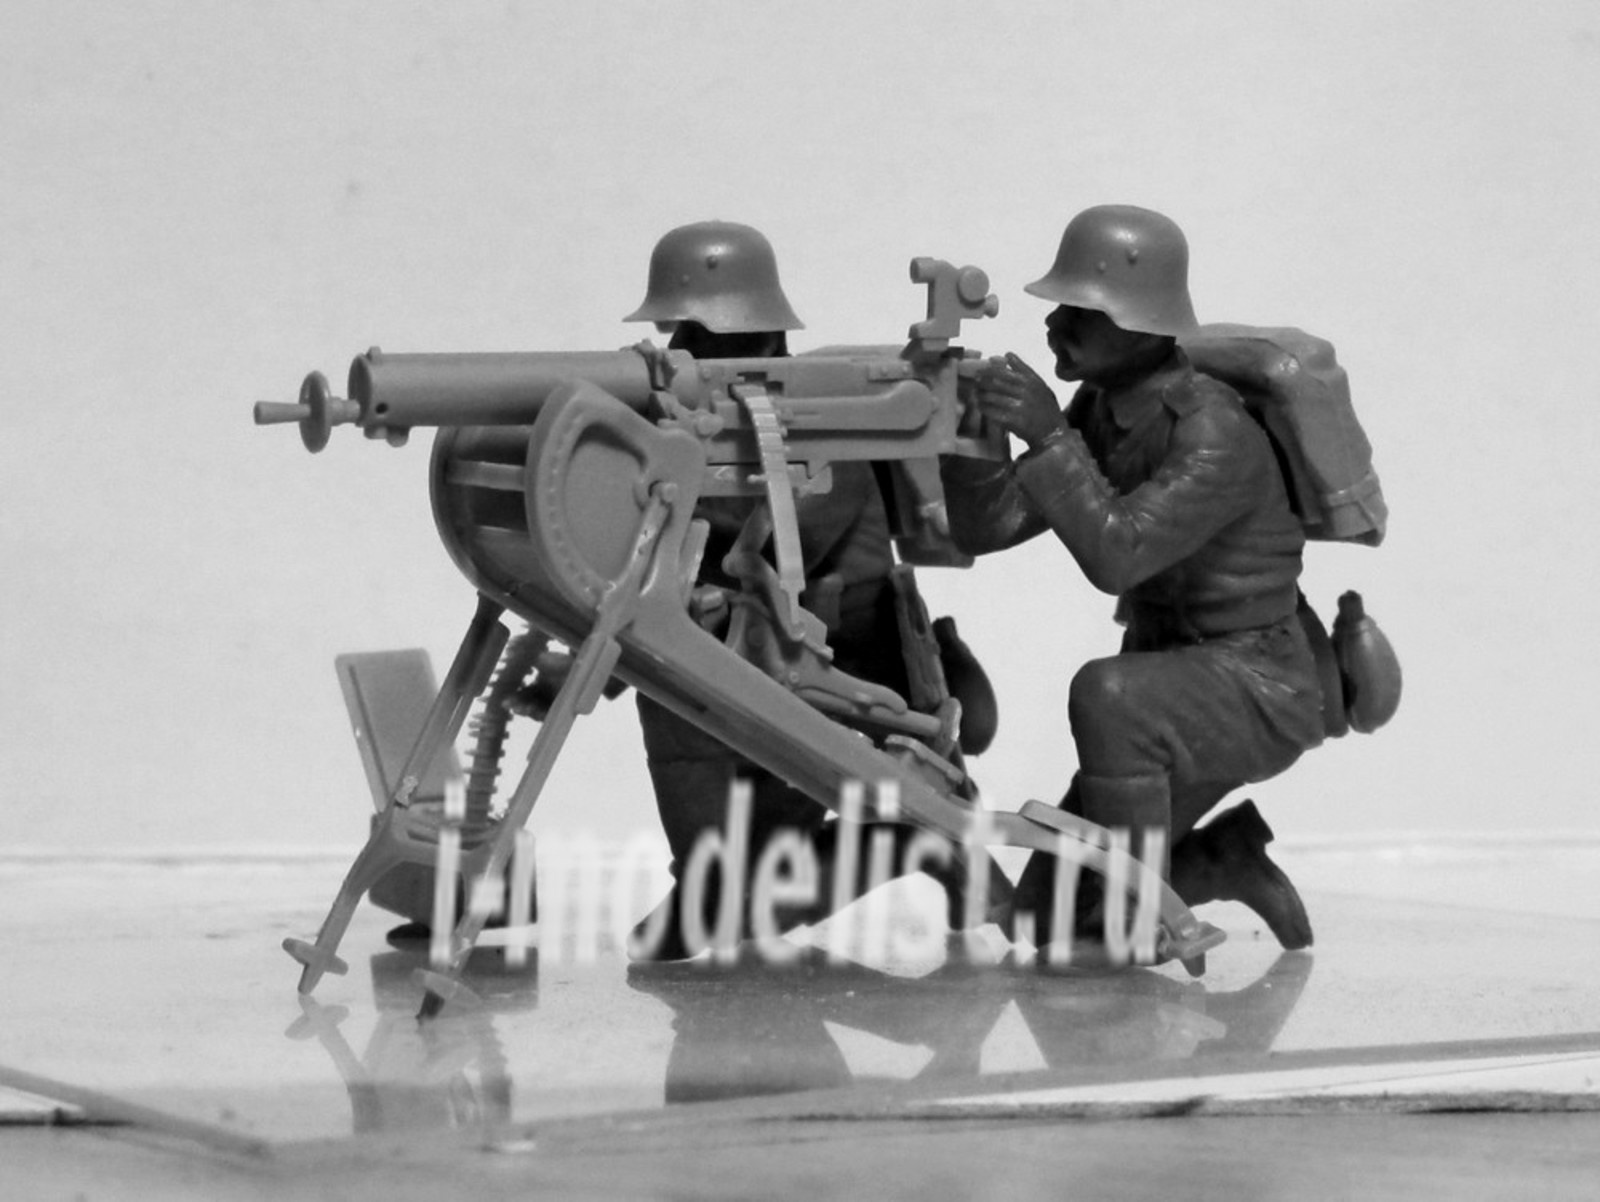 35711 ICM 1/35 Германский пулеметный расчет I МВ (2 фигуры)